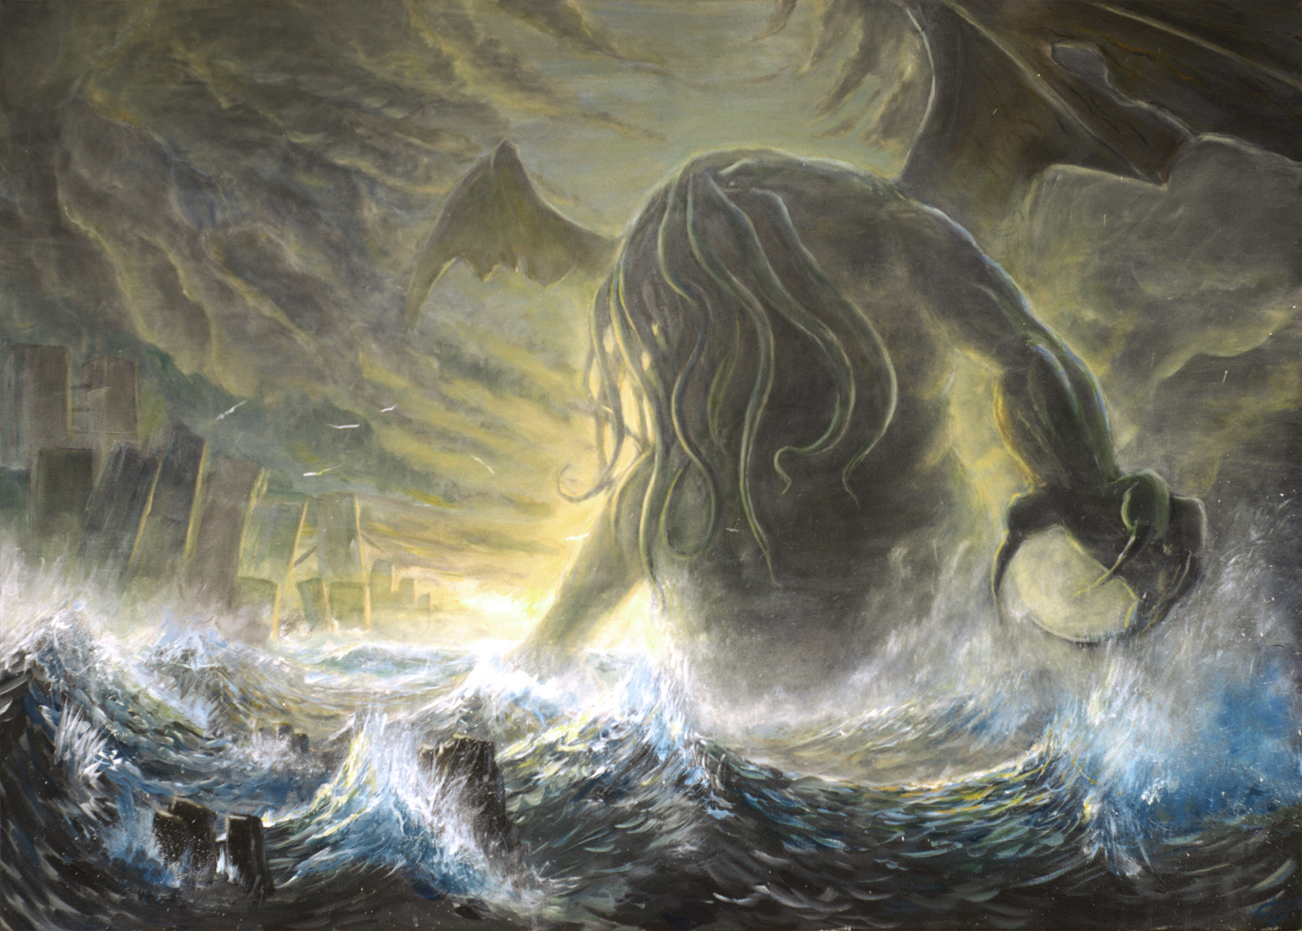 Mitos De Cthulhu Lovecraft Wallpaper Fondos 06jpg